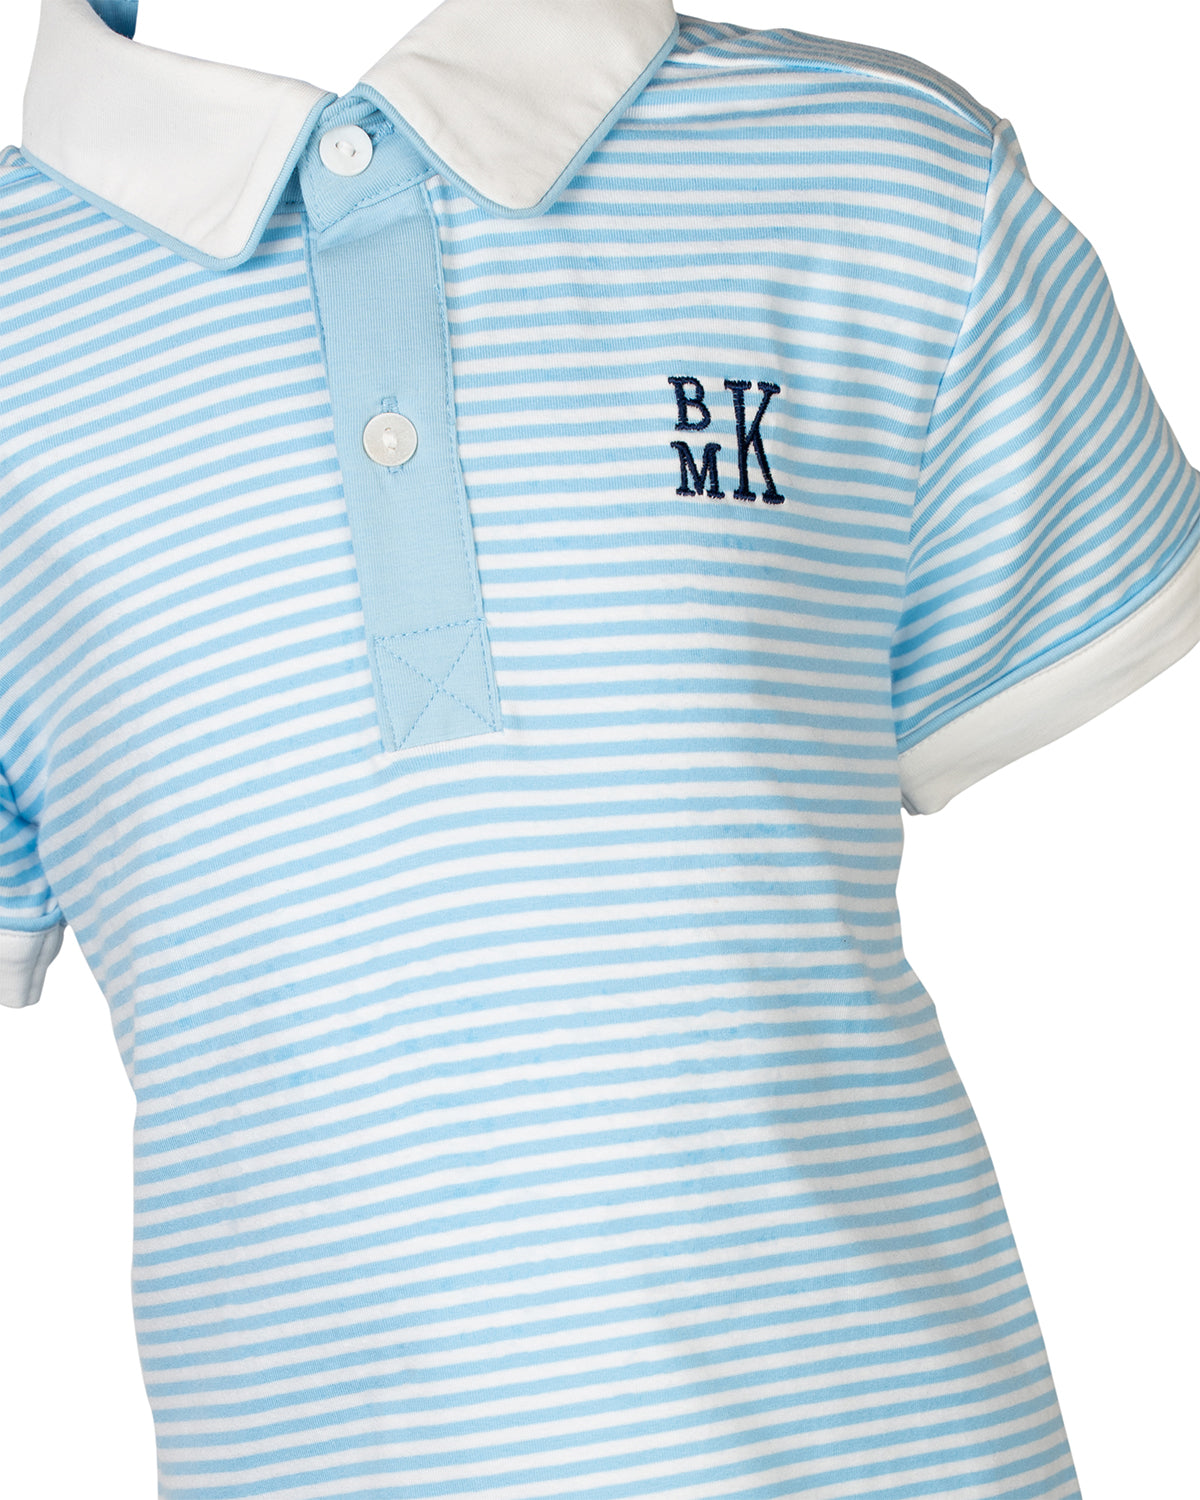 Sky Blue Striped Knit Polo Shirt-FINAL SALE